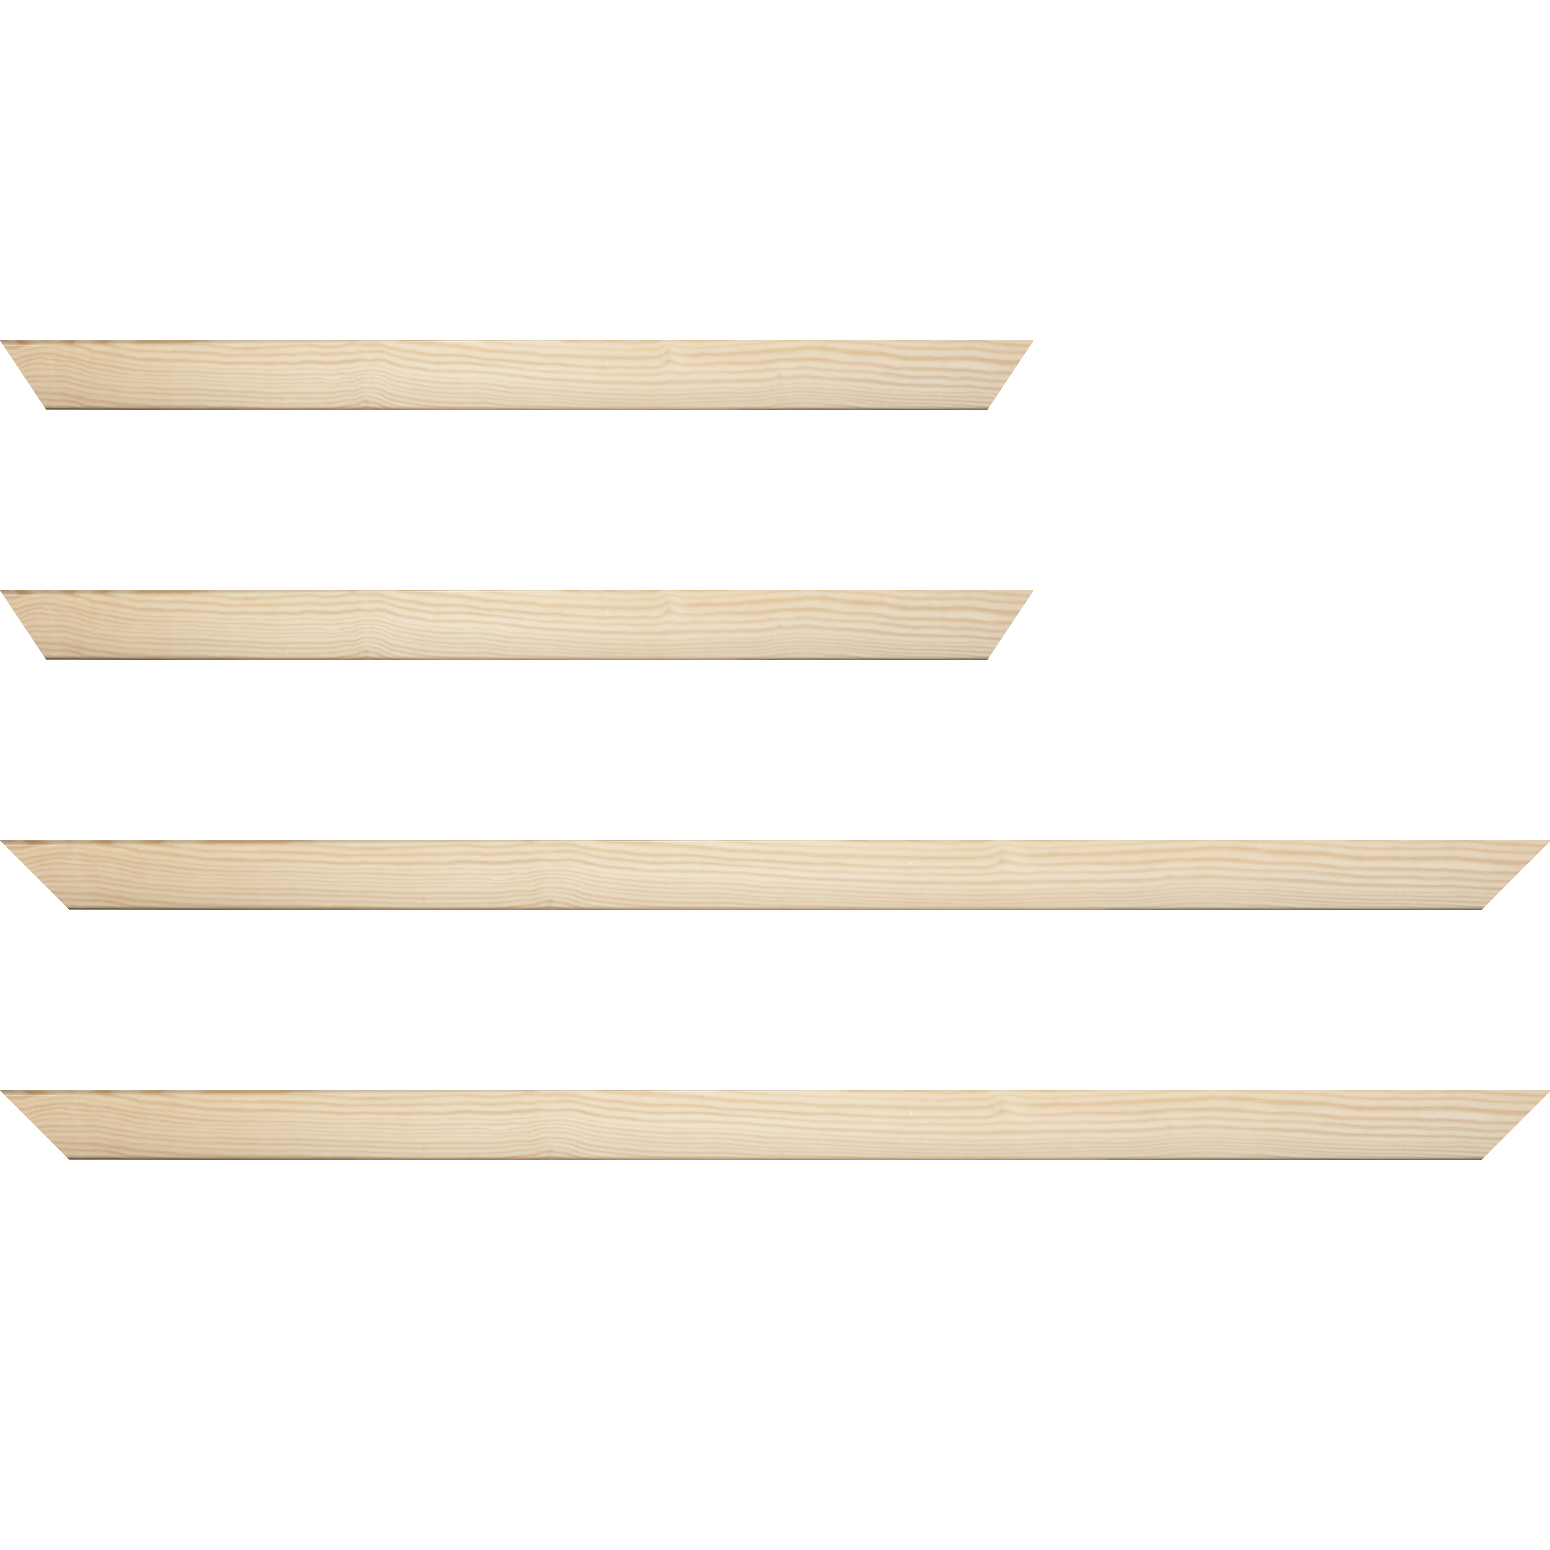 Baguette bois profil arrondi en pente plongeant largeur 2.4cm couleur naturel finition vernis brillant,veine du bois  apparent (pin) , - 24x30